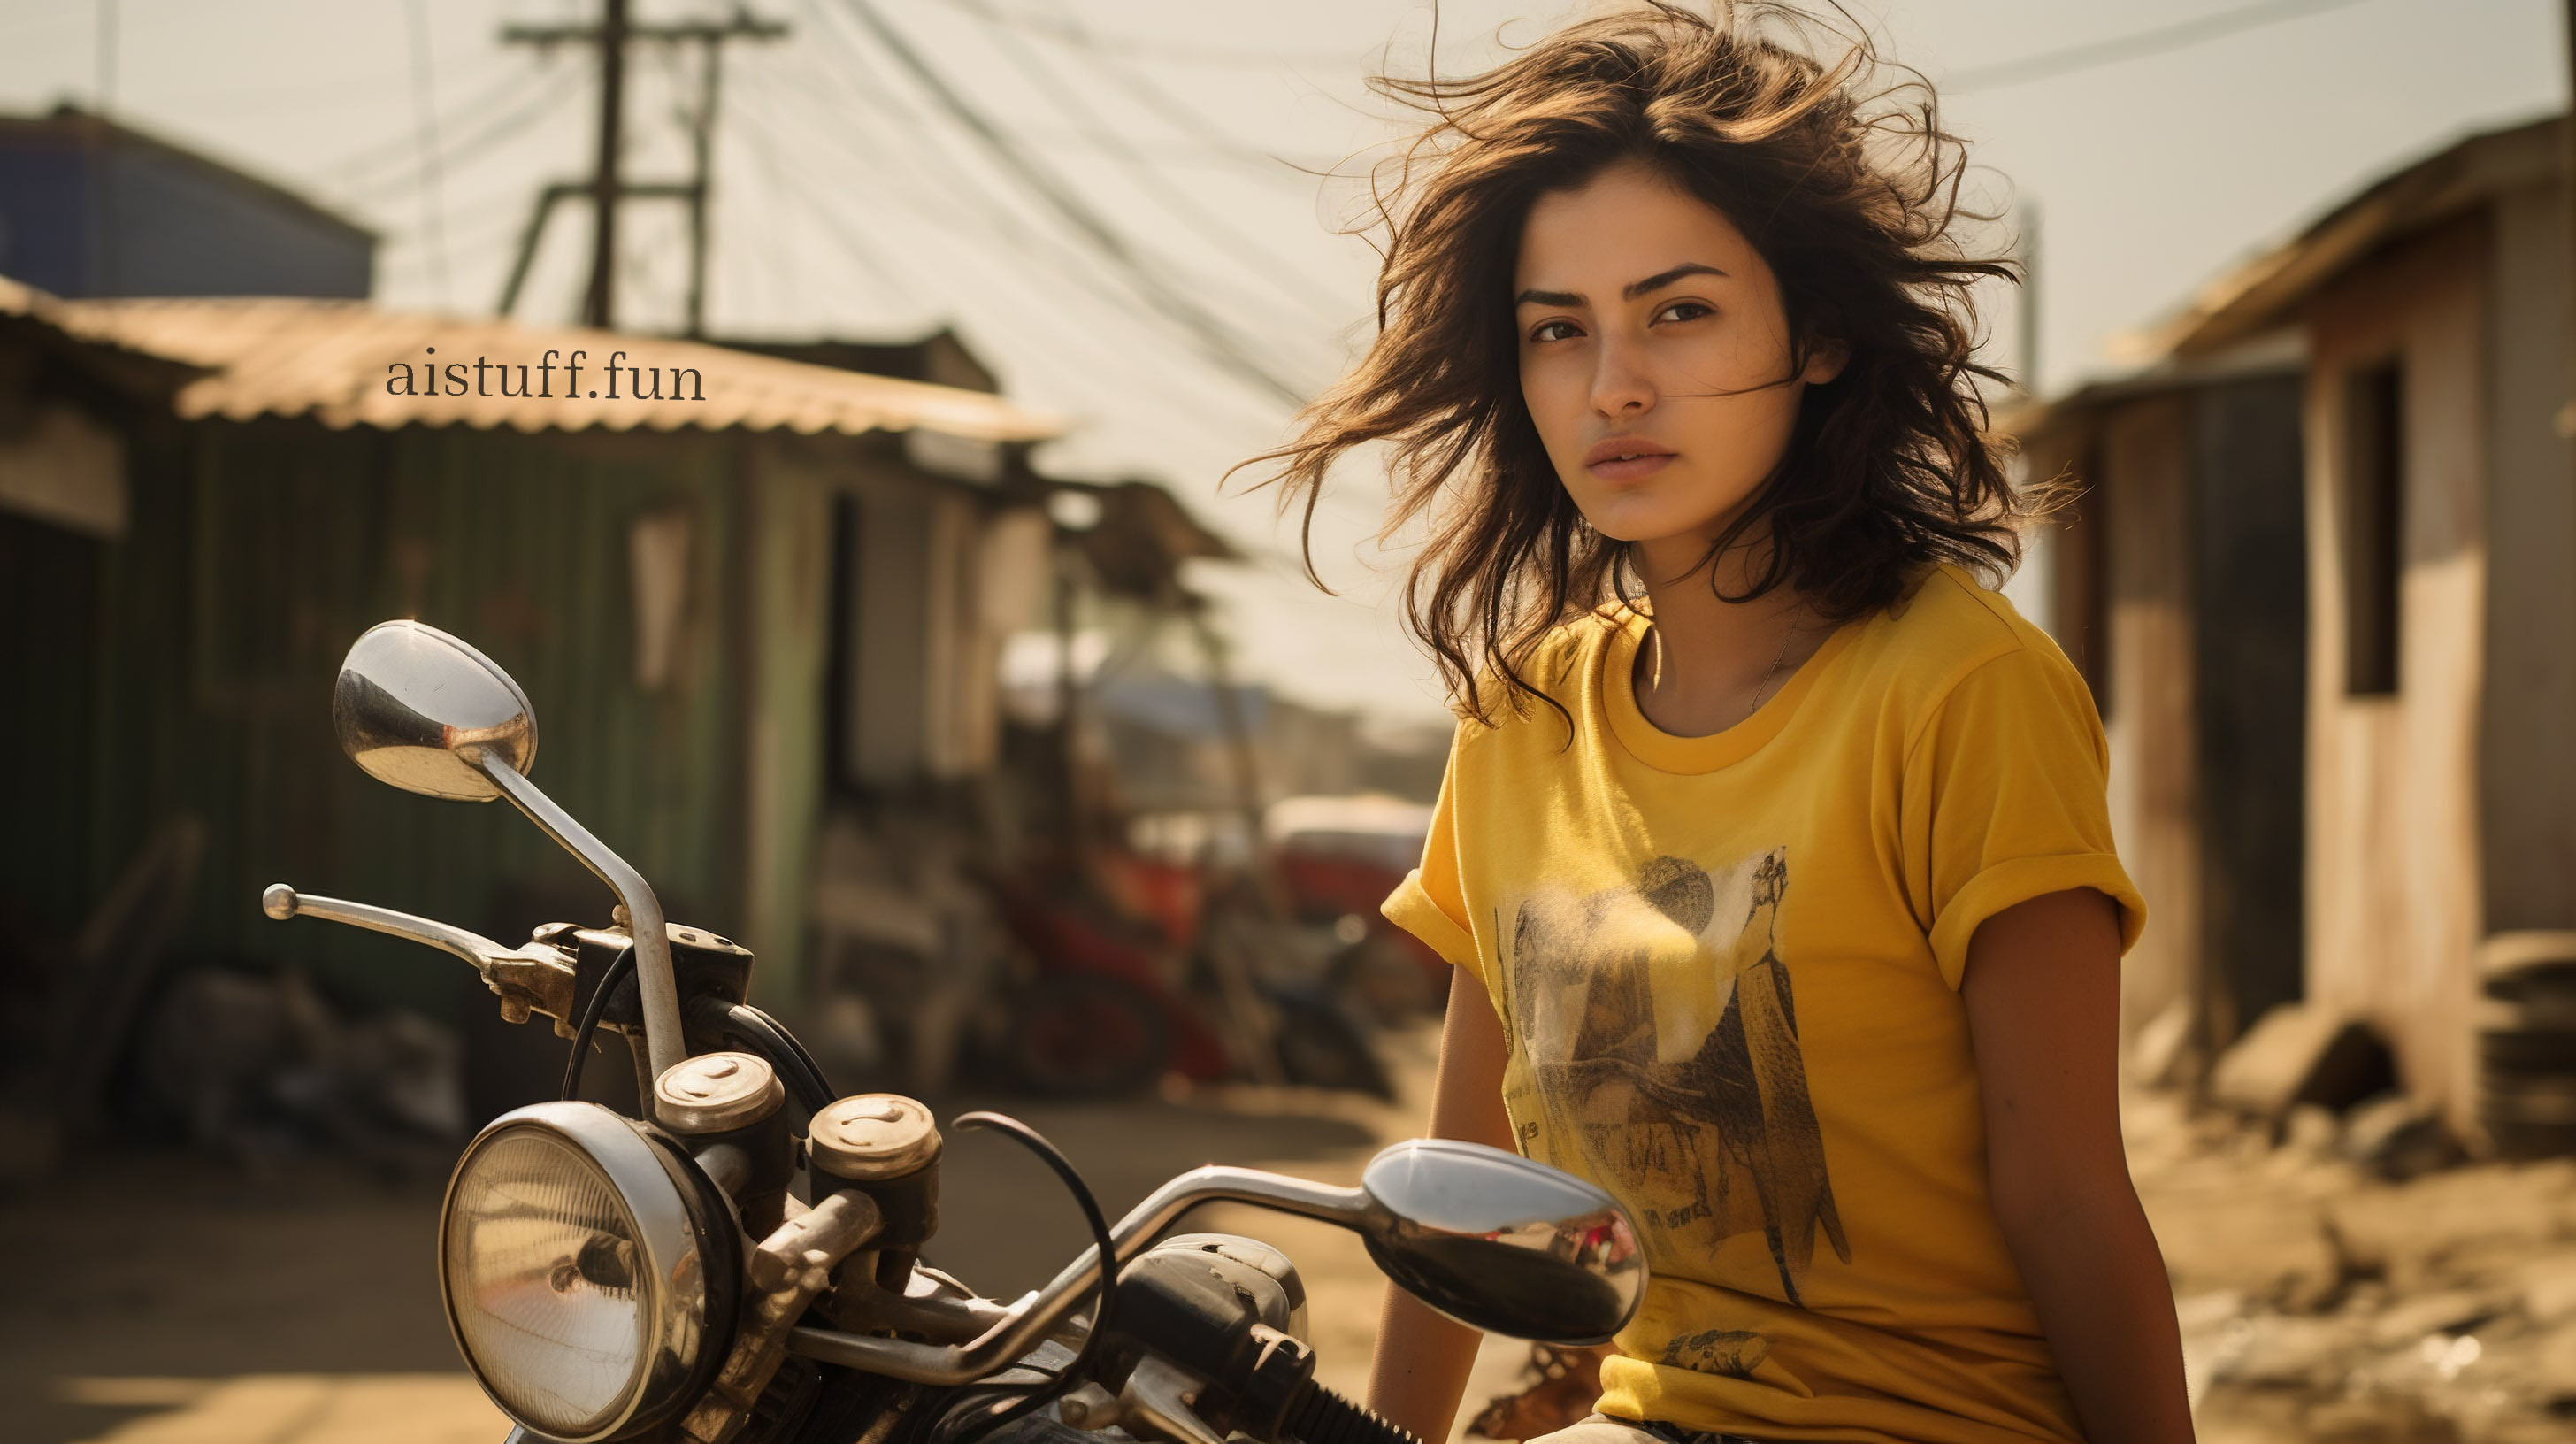 Красивая девушка на мотоцикле с короткими развевающимися на ветру волосами